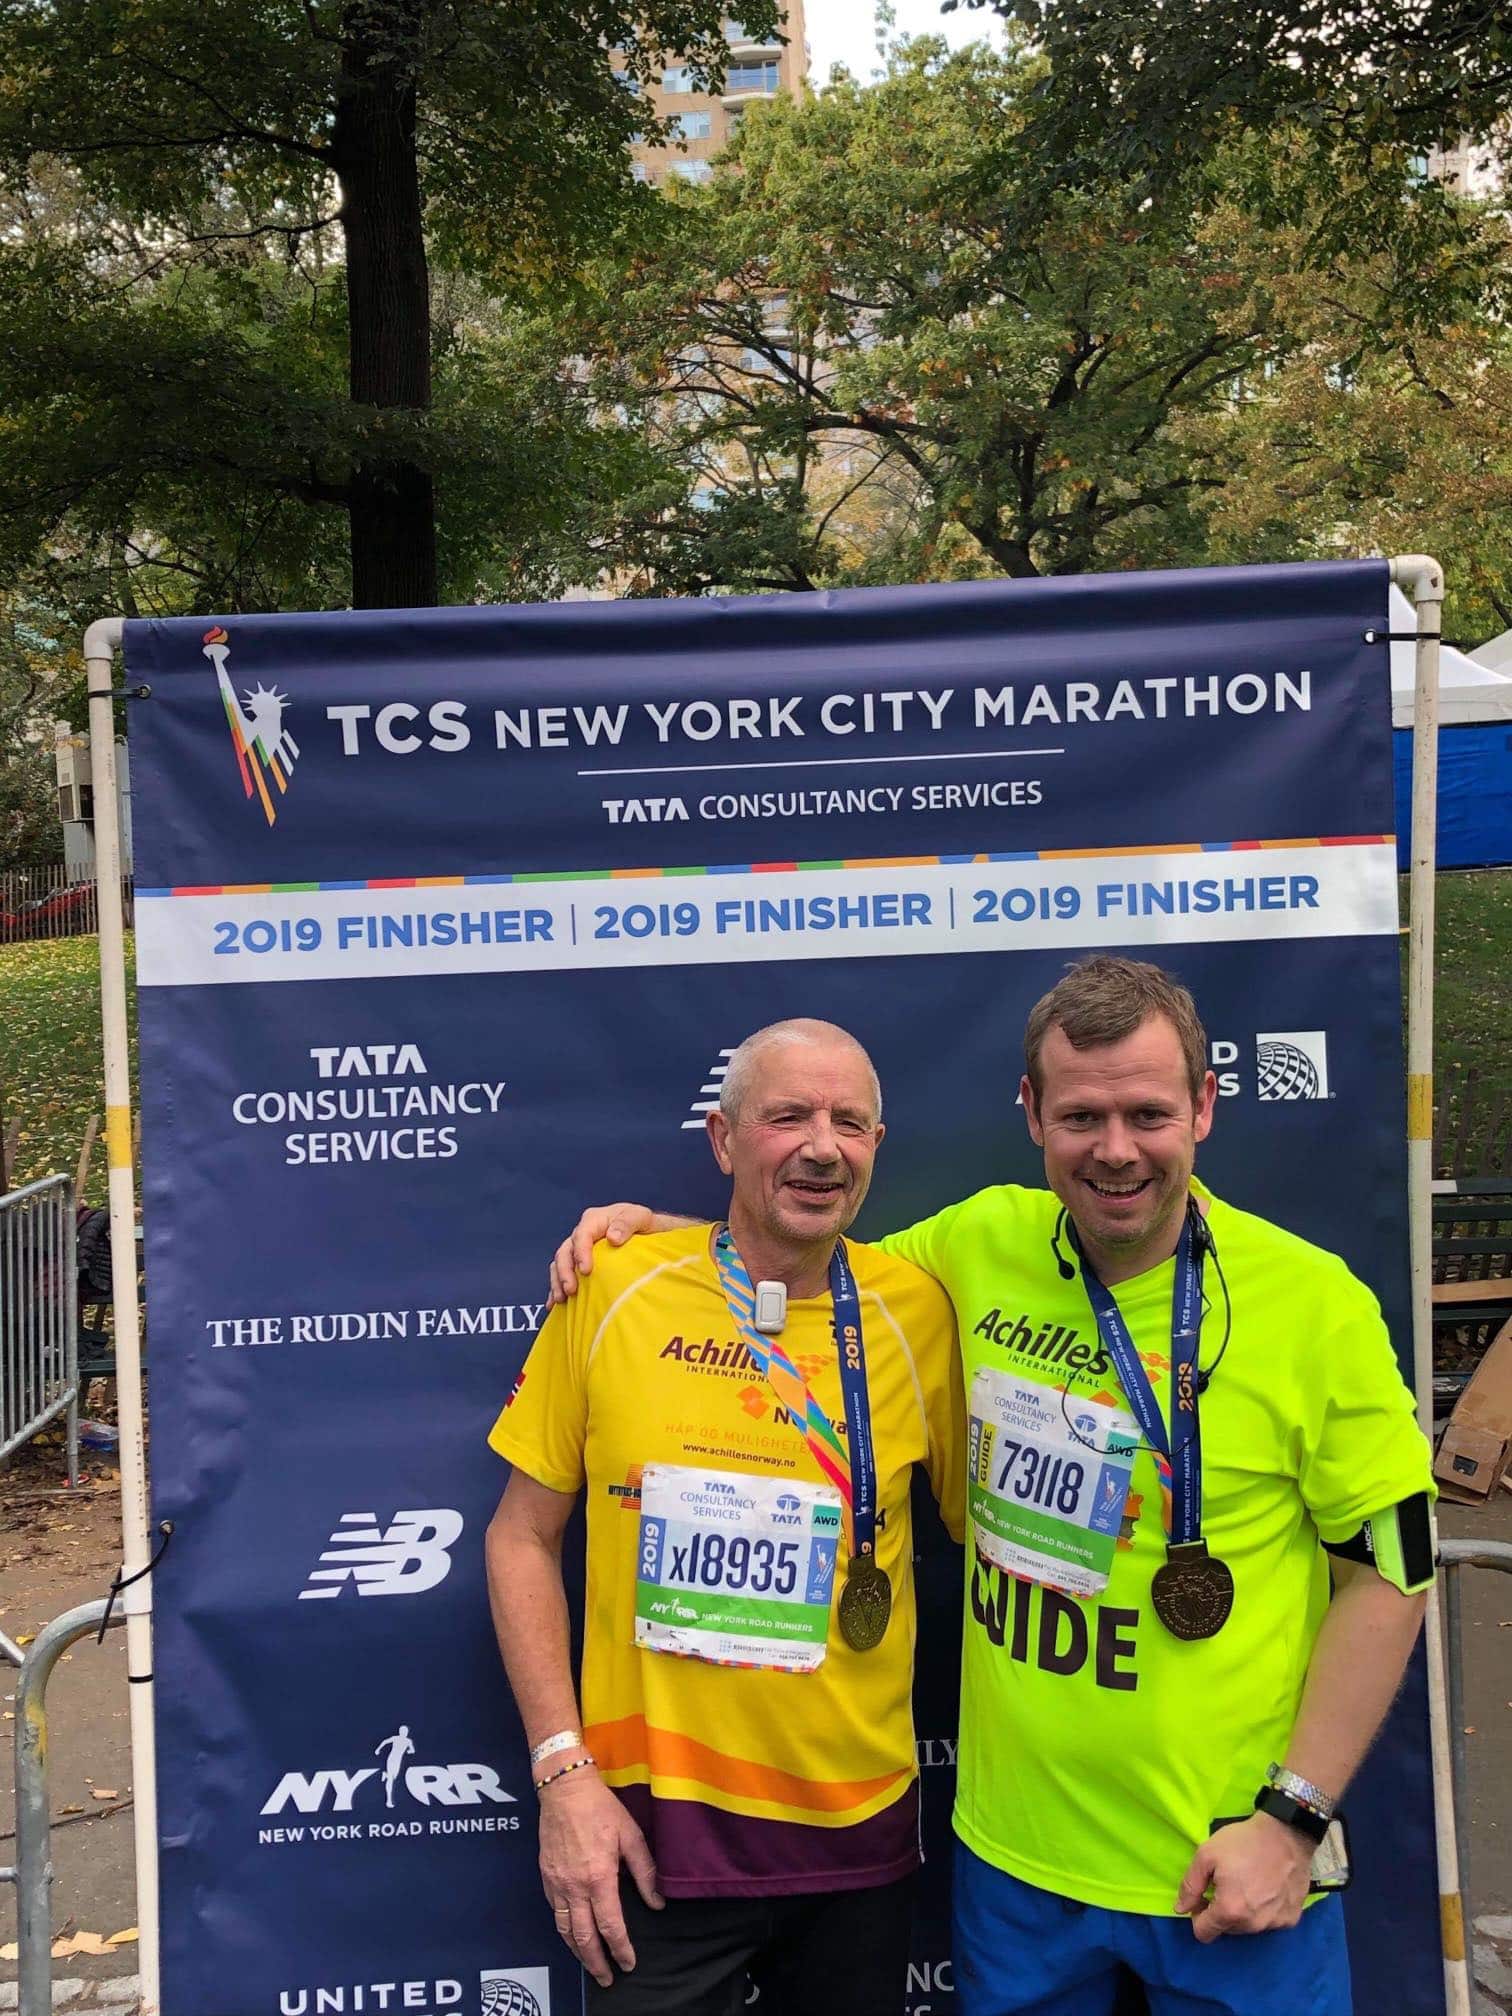 Hans Joakim i gul trøye smiler foran en plakat med New York City Marathon-tekst og arrangementets sponsorer. Assistent holder rundt skulderen hans og smiler. Han har på neongul trøye. Begge har medaljer rundt halsen.